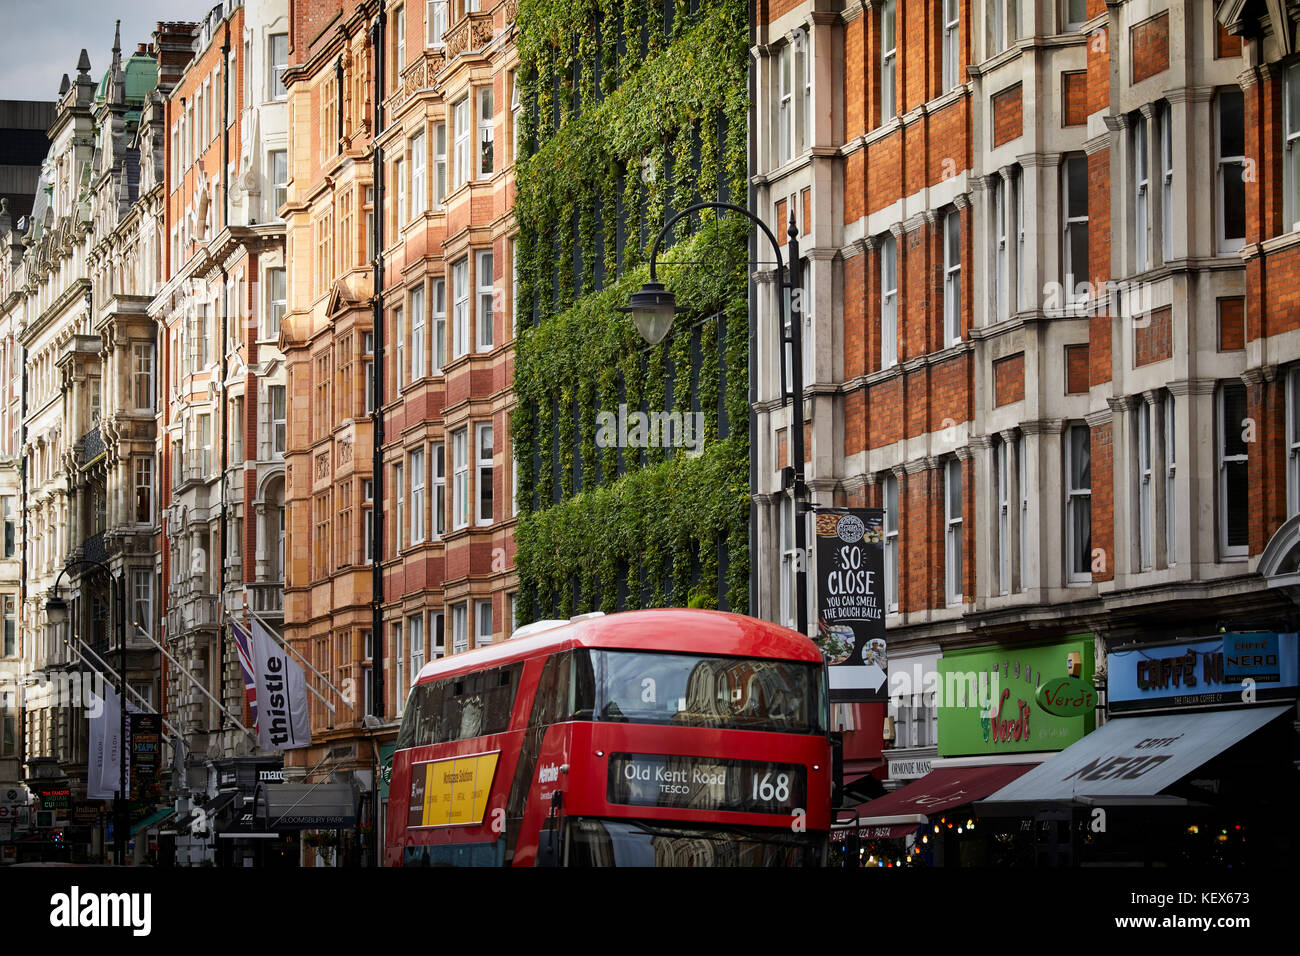 Immergrüne Pflanzen Living Wall für die Fassade der Synergie Haus auf Southampton Row in London Die Hauptstadt von England Stockfoto